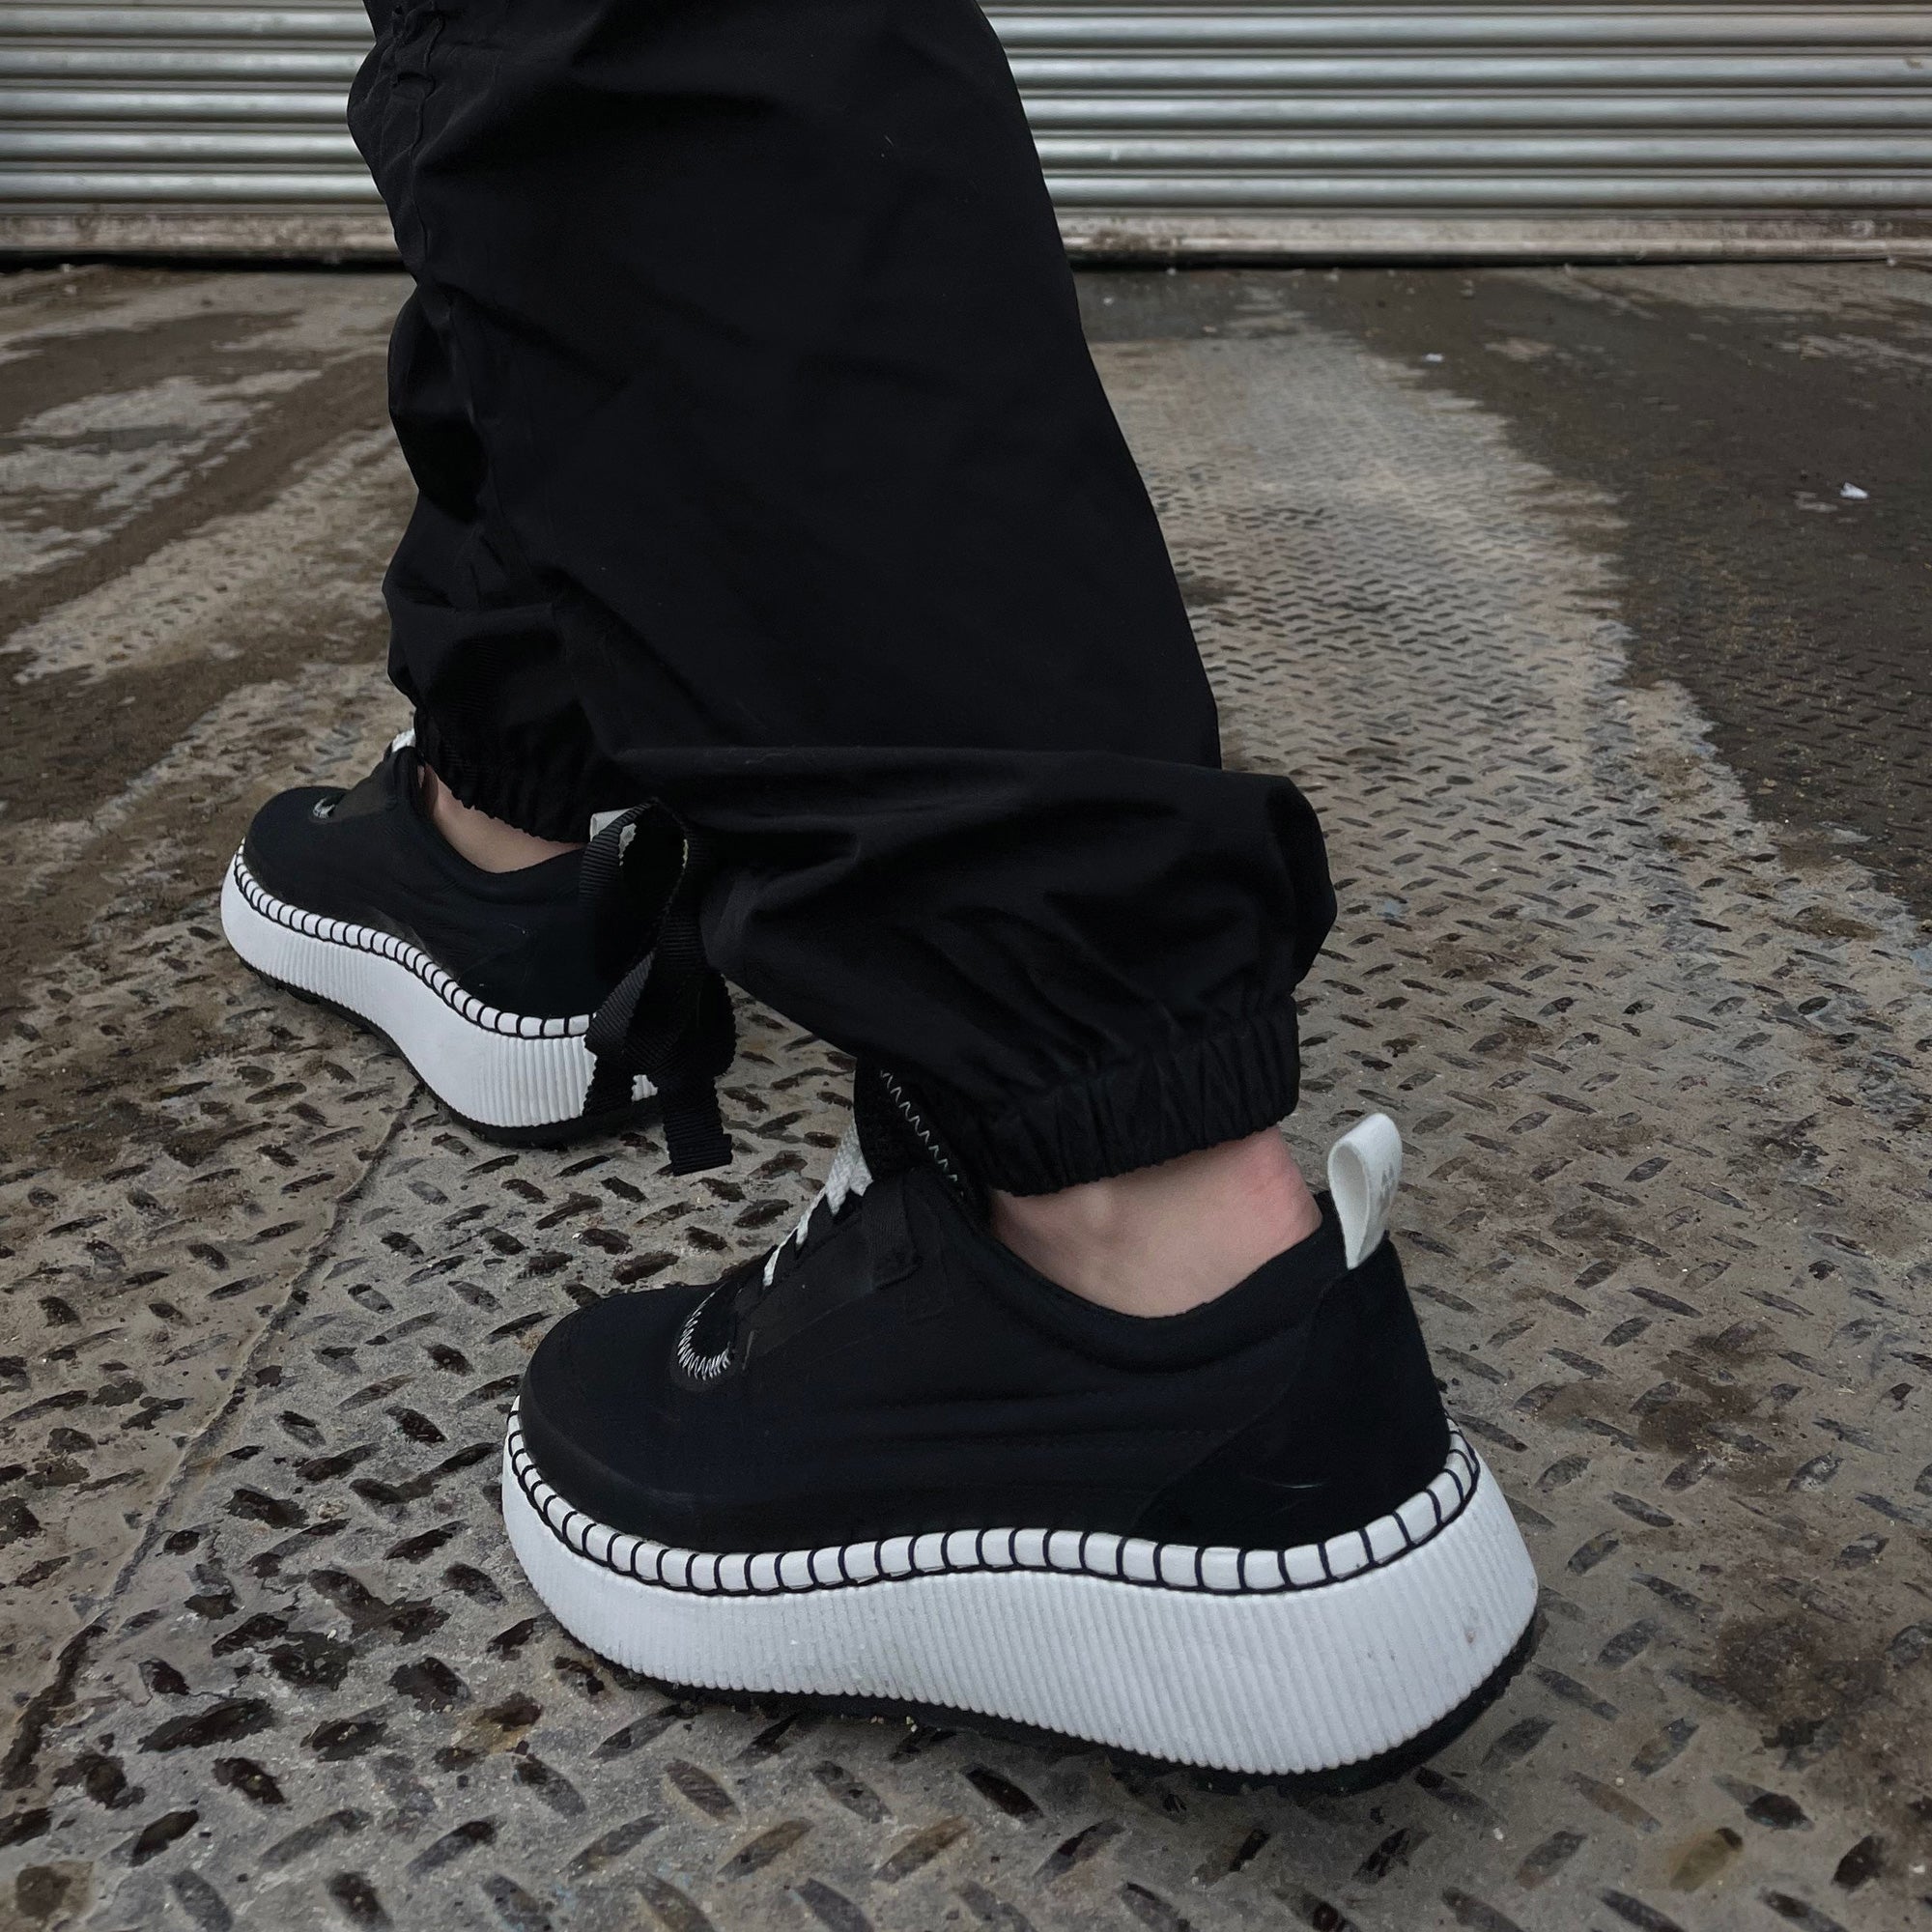 Sayah - Sneaker Luxmotion étanche en nylon et suède - Colour Black-White